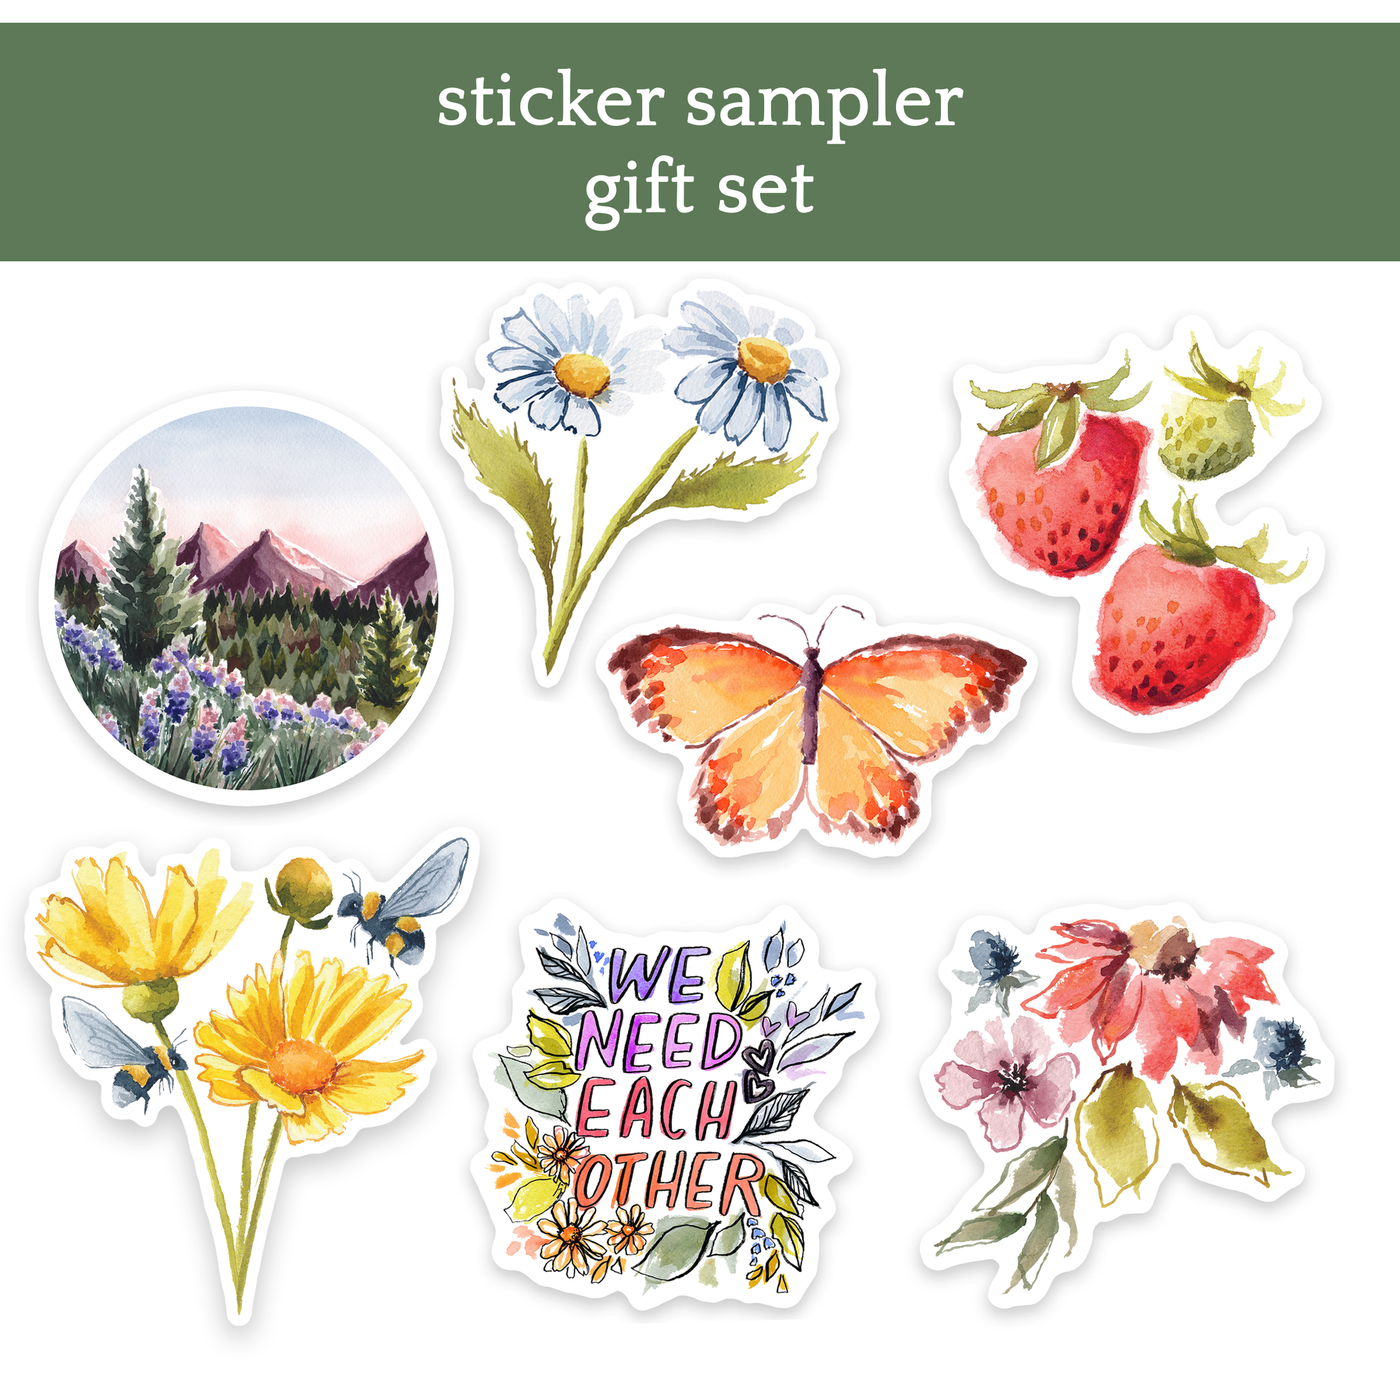 sticker sampler gift set